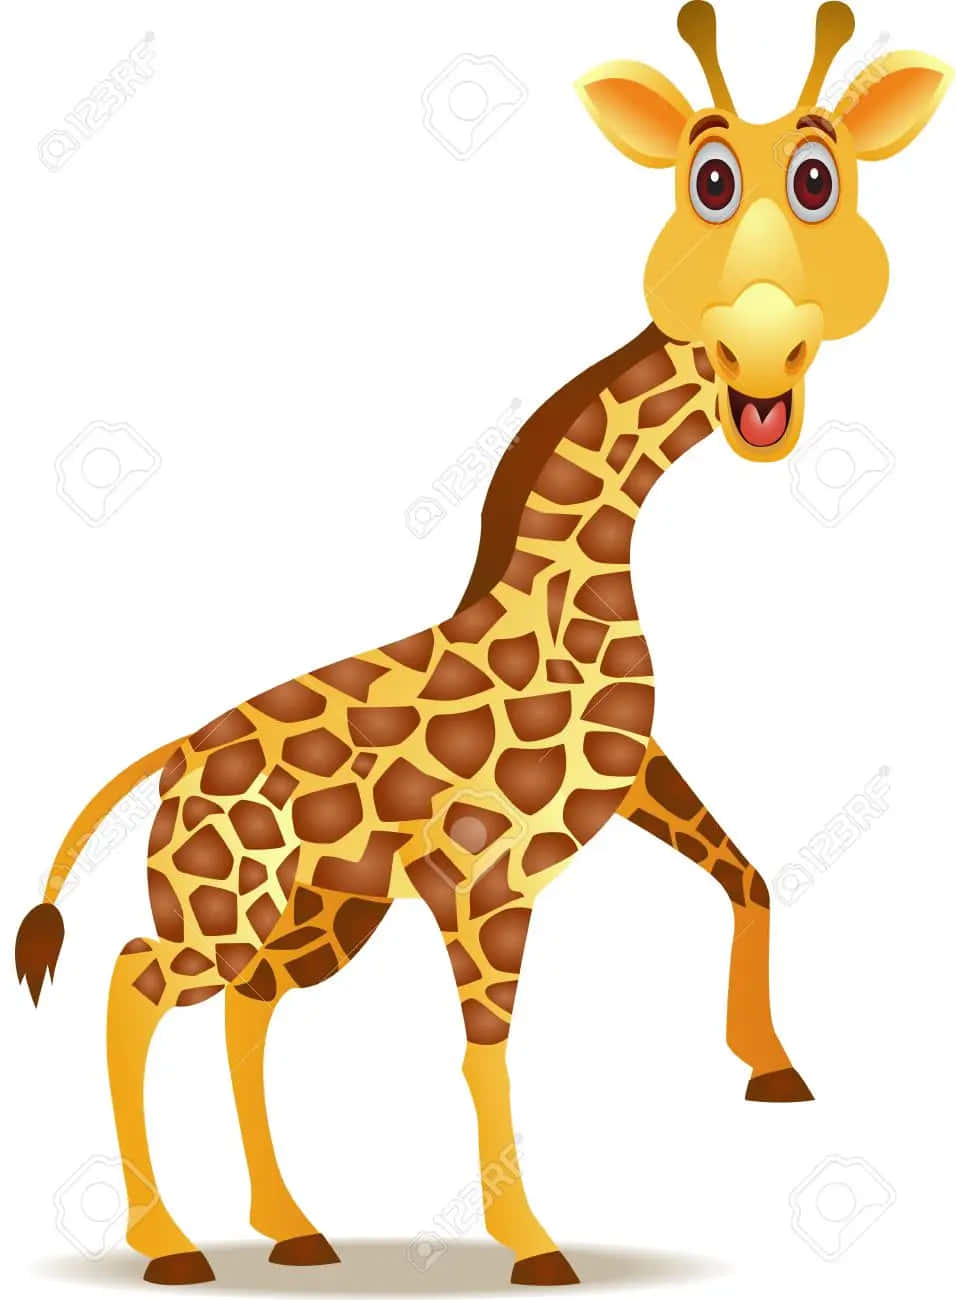 Dieselustige Giraffe Kann Ihre Freude Nicht Verbergen!